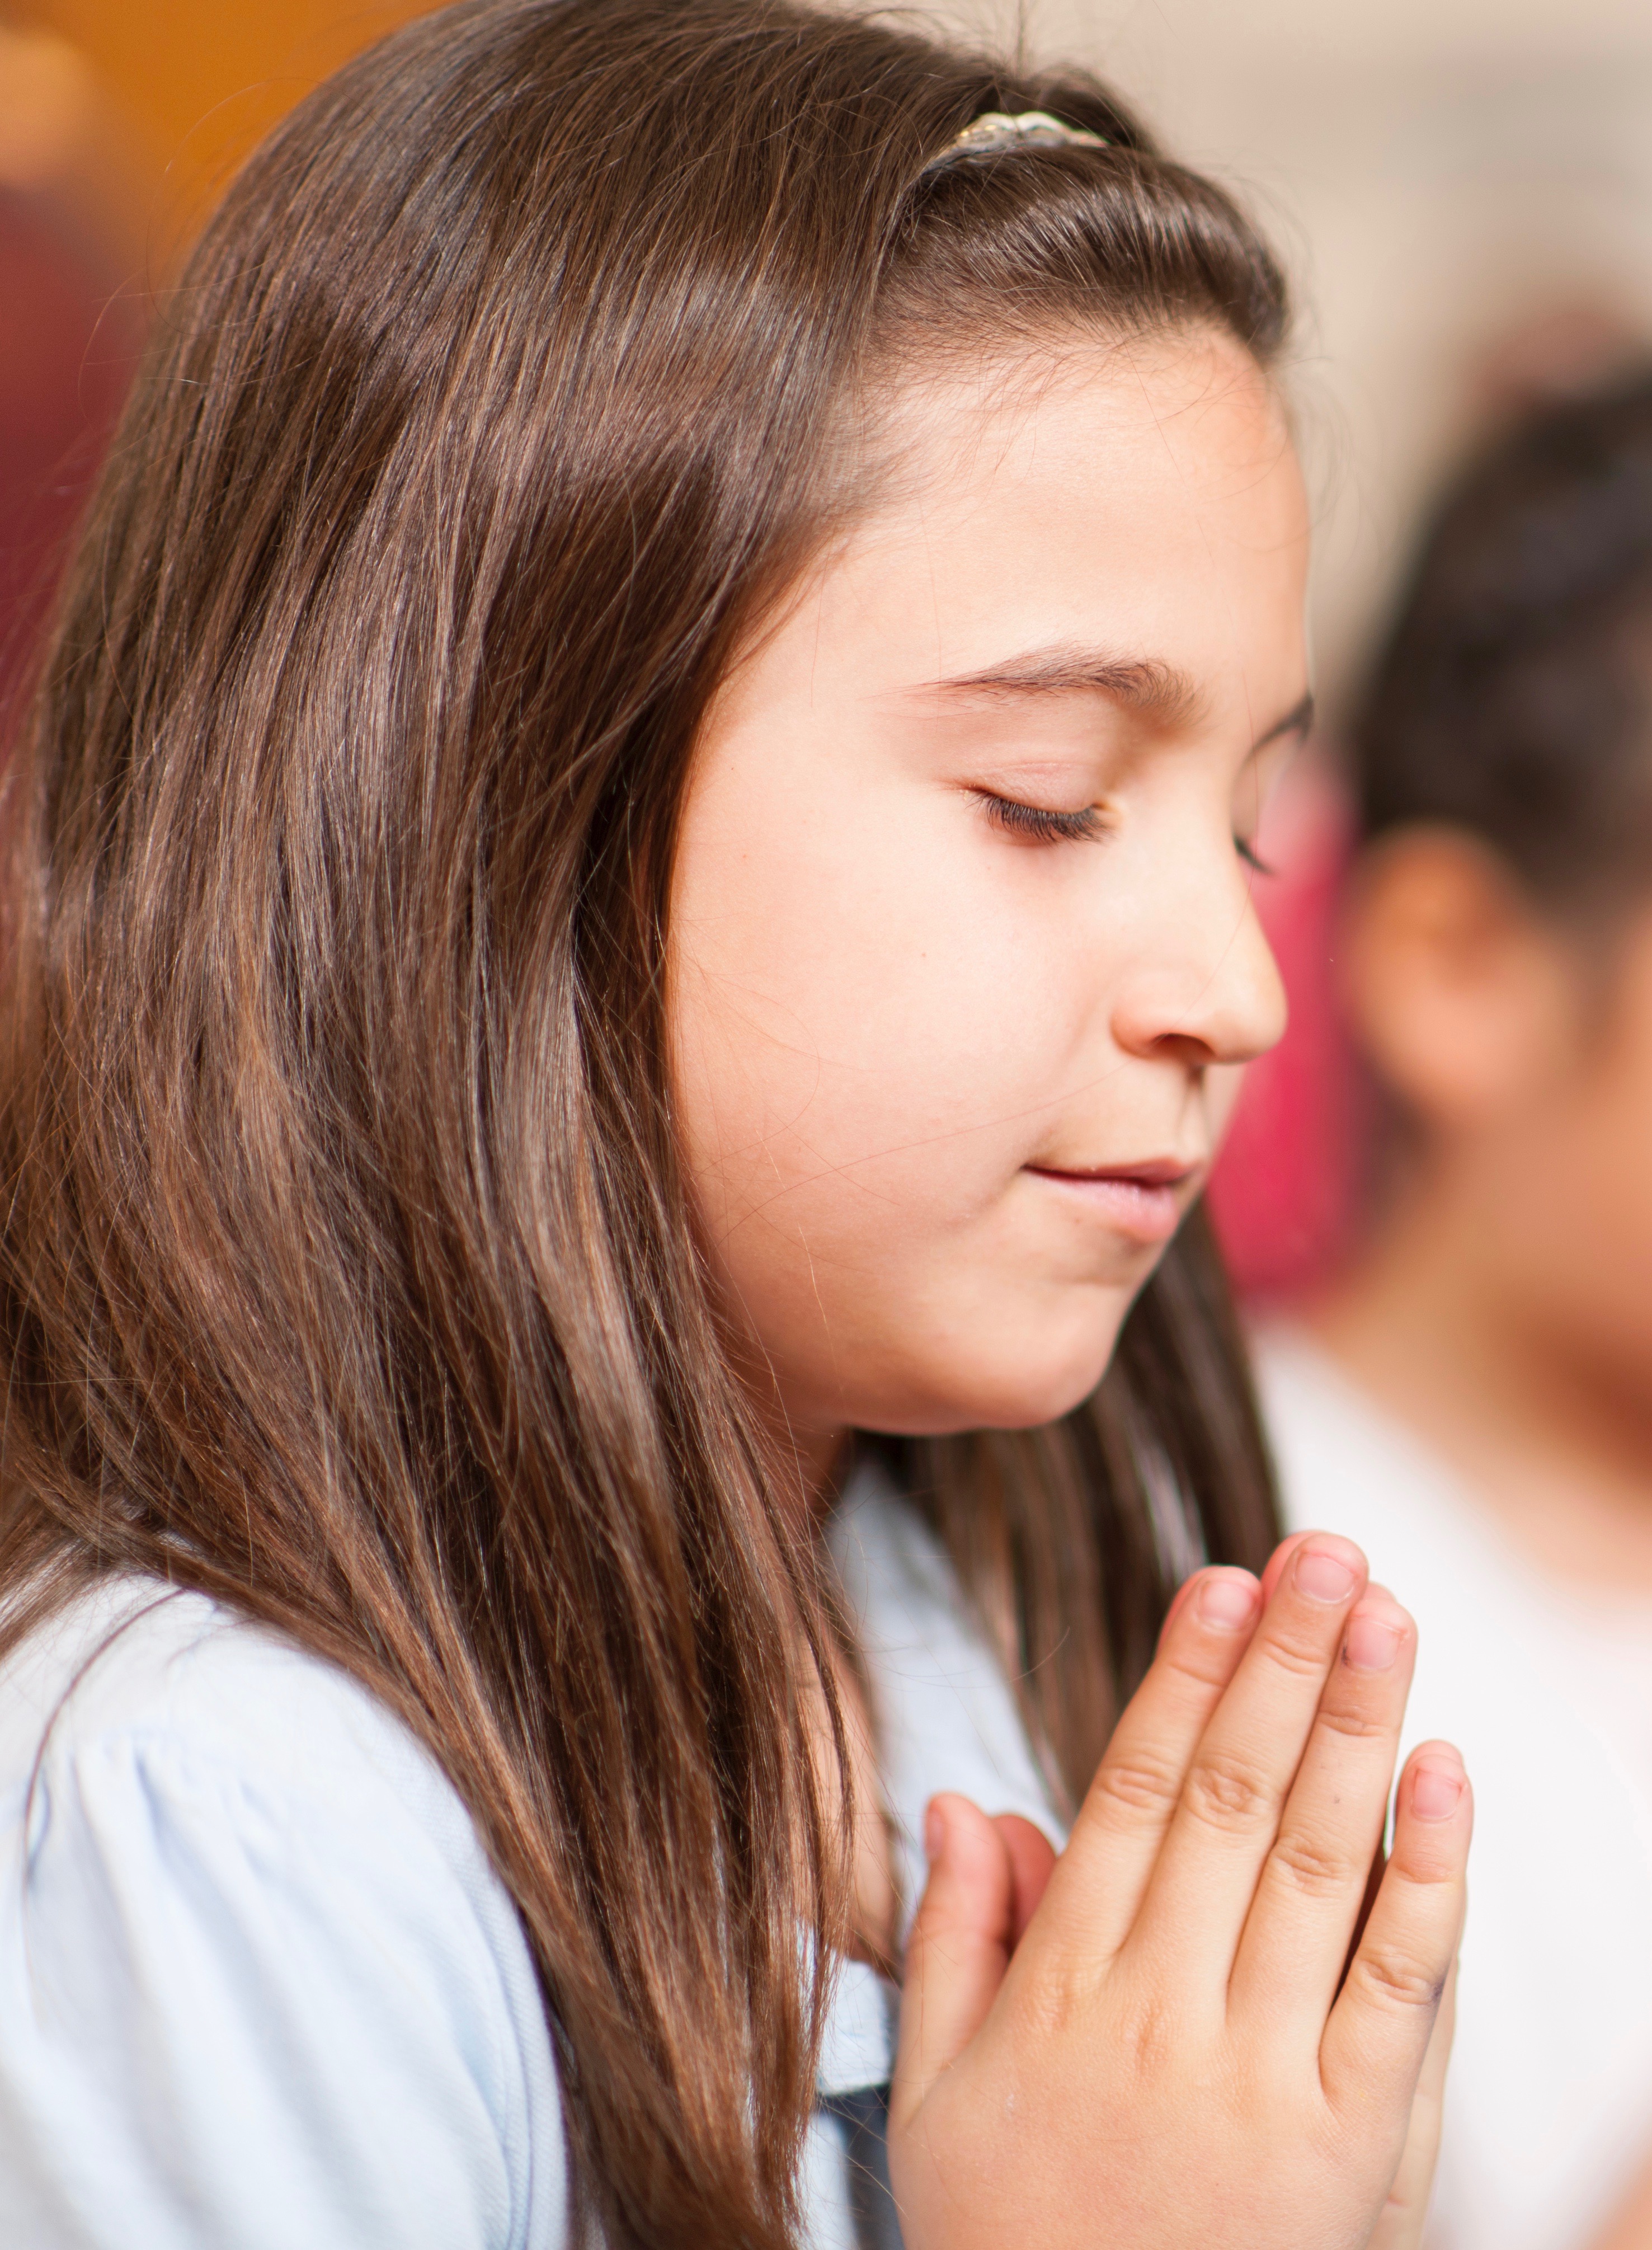 photo of girl praying